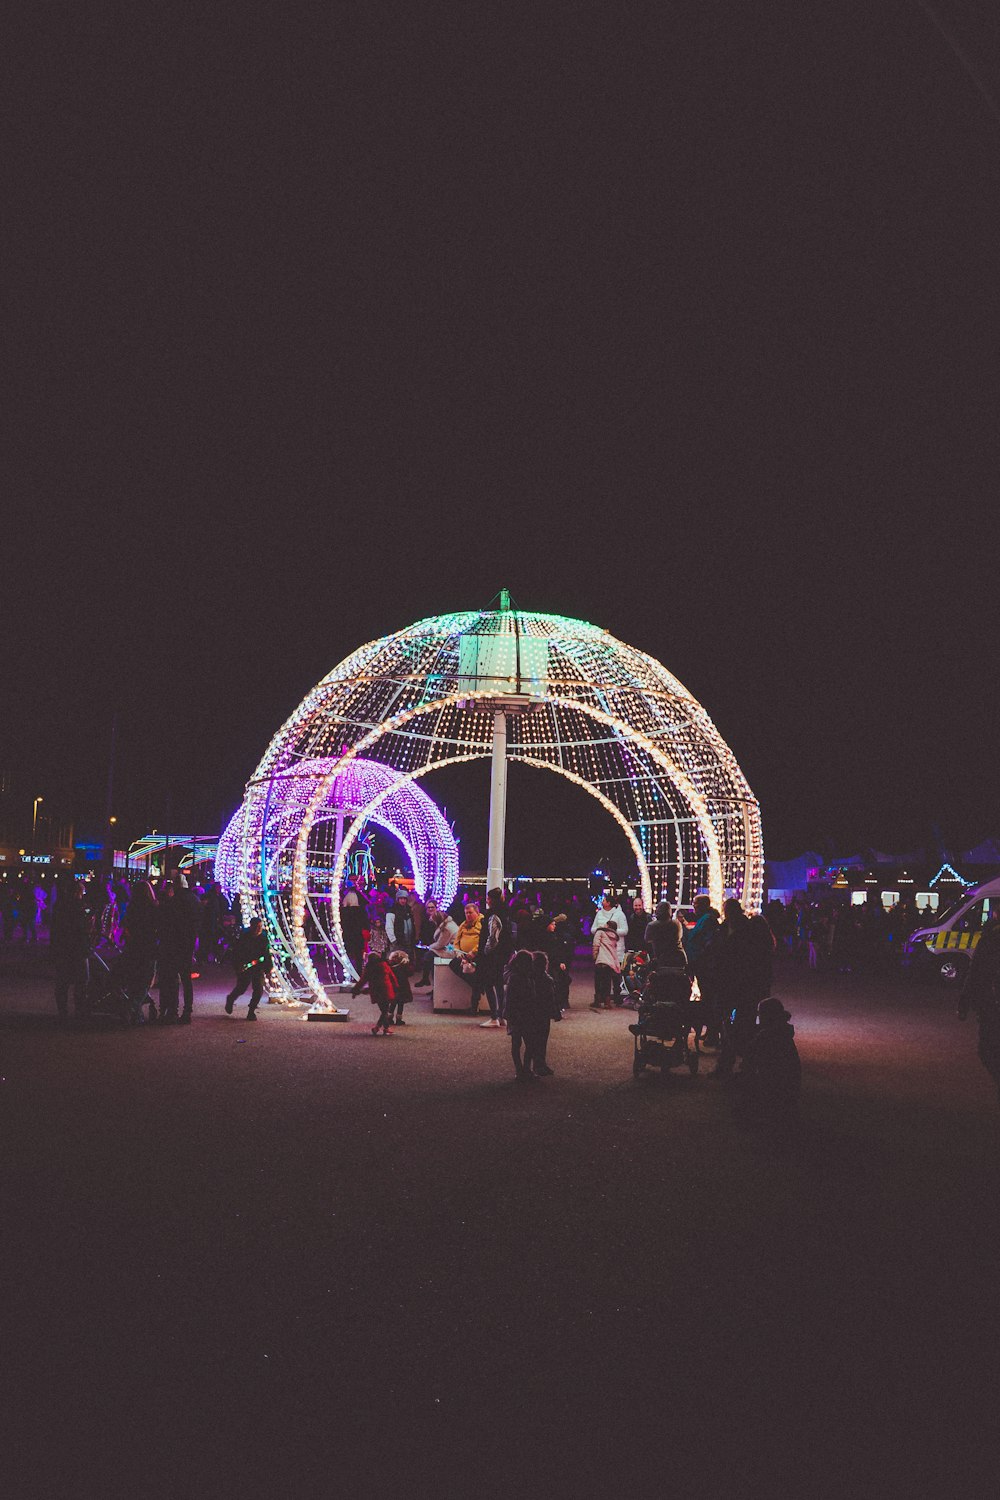 um grupo de pessoas na frente de uma roda gigante iluminada